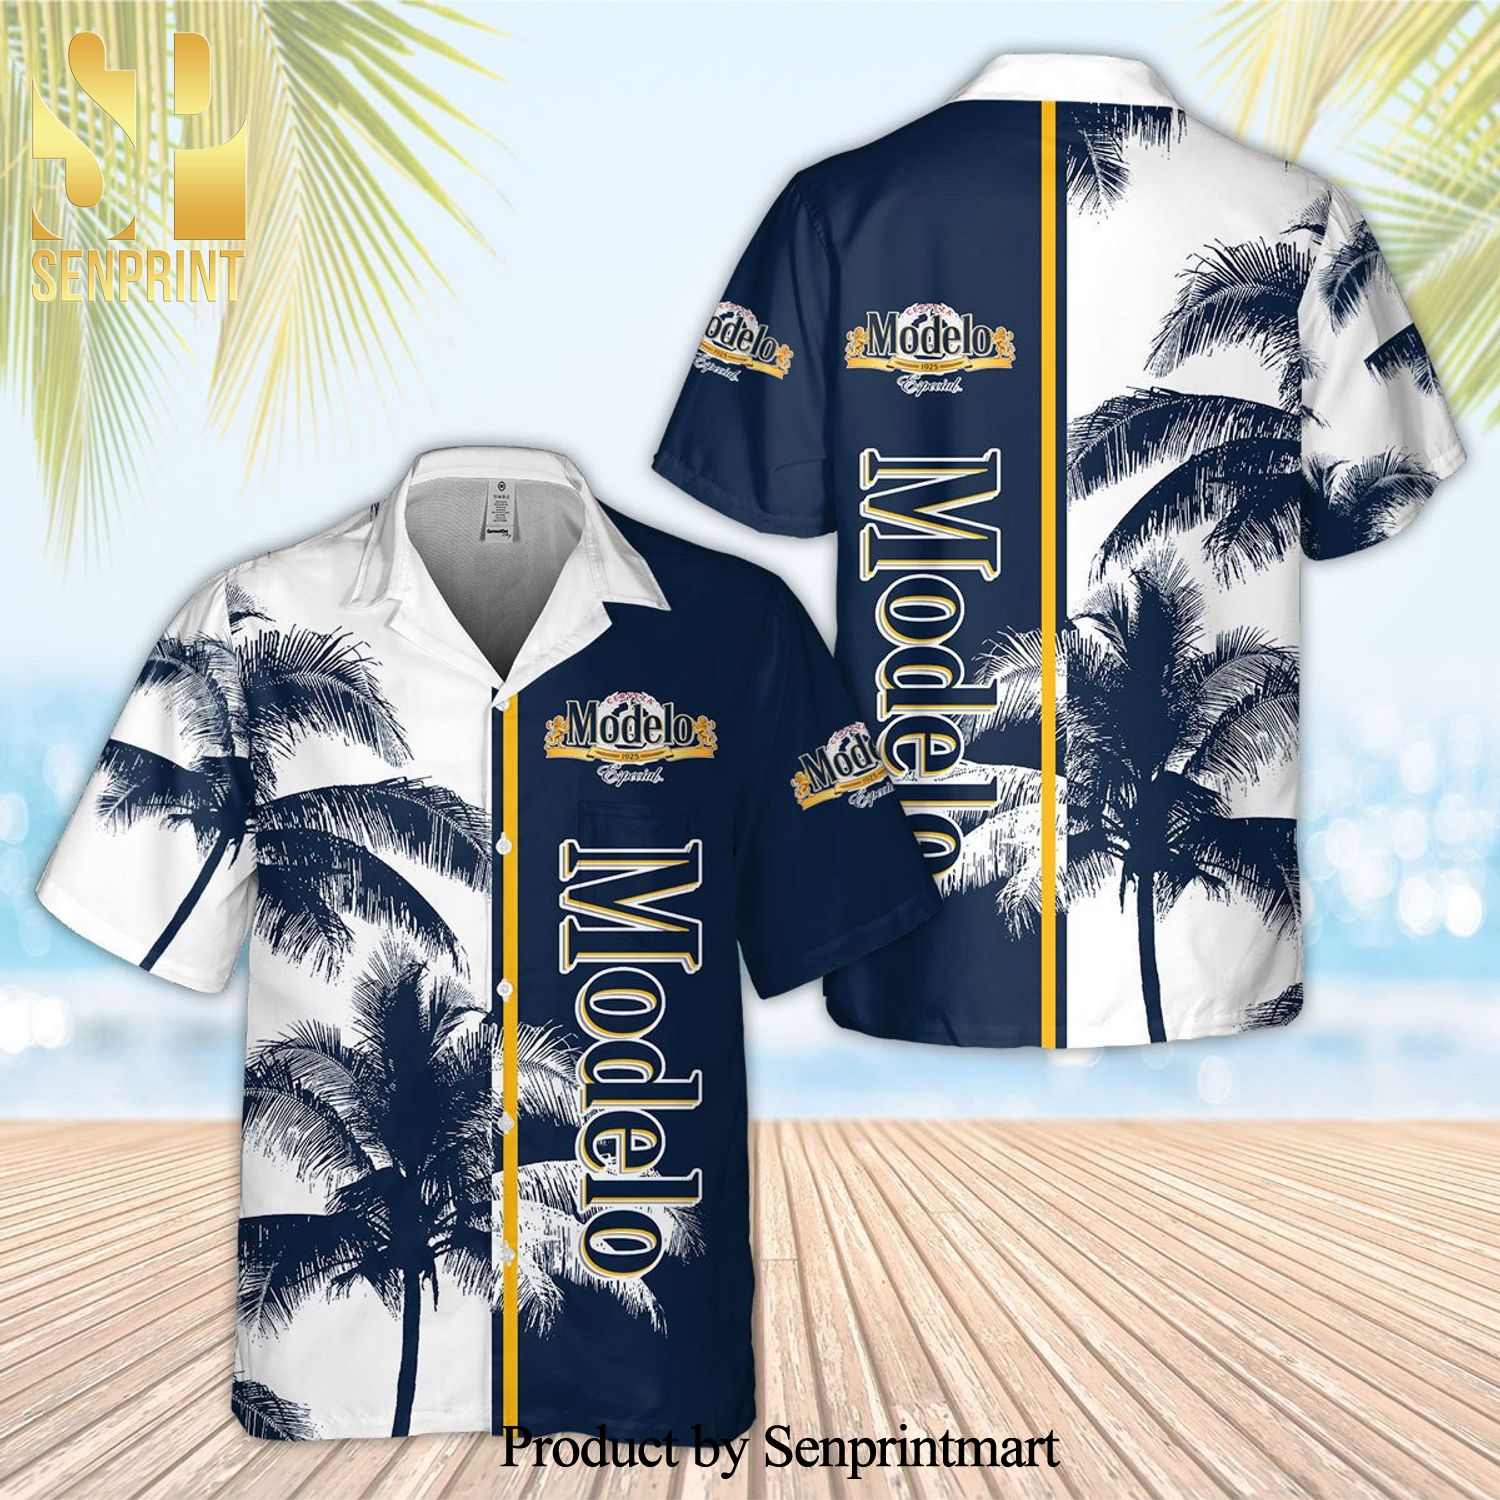 Modelo Palm Tree Full Printing Aloha Summer Beach Hawaiian Shirt - White Navy